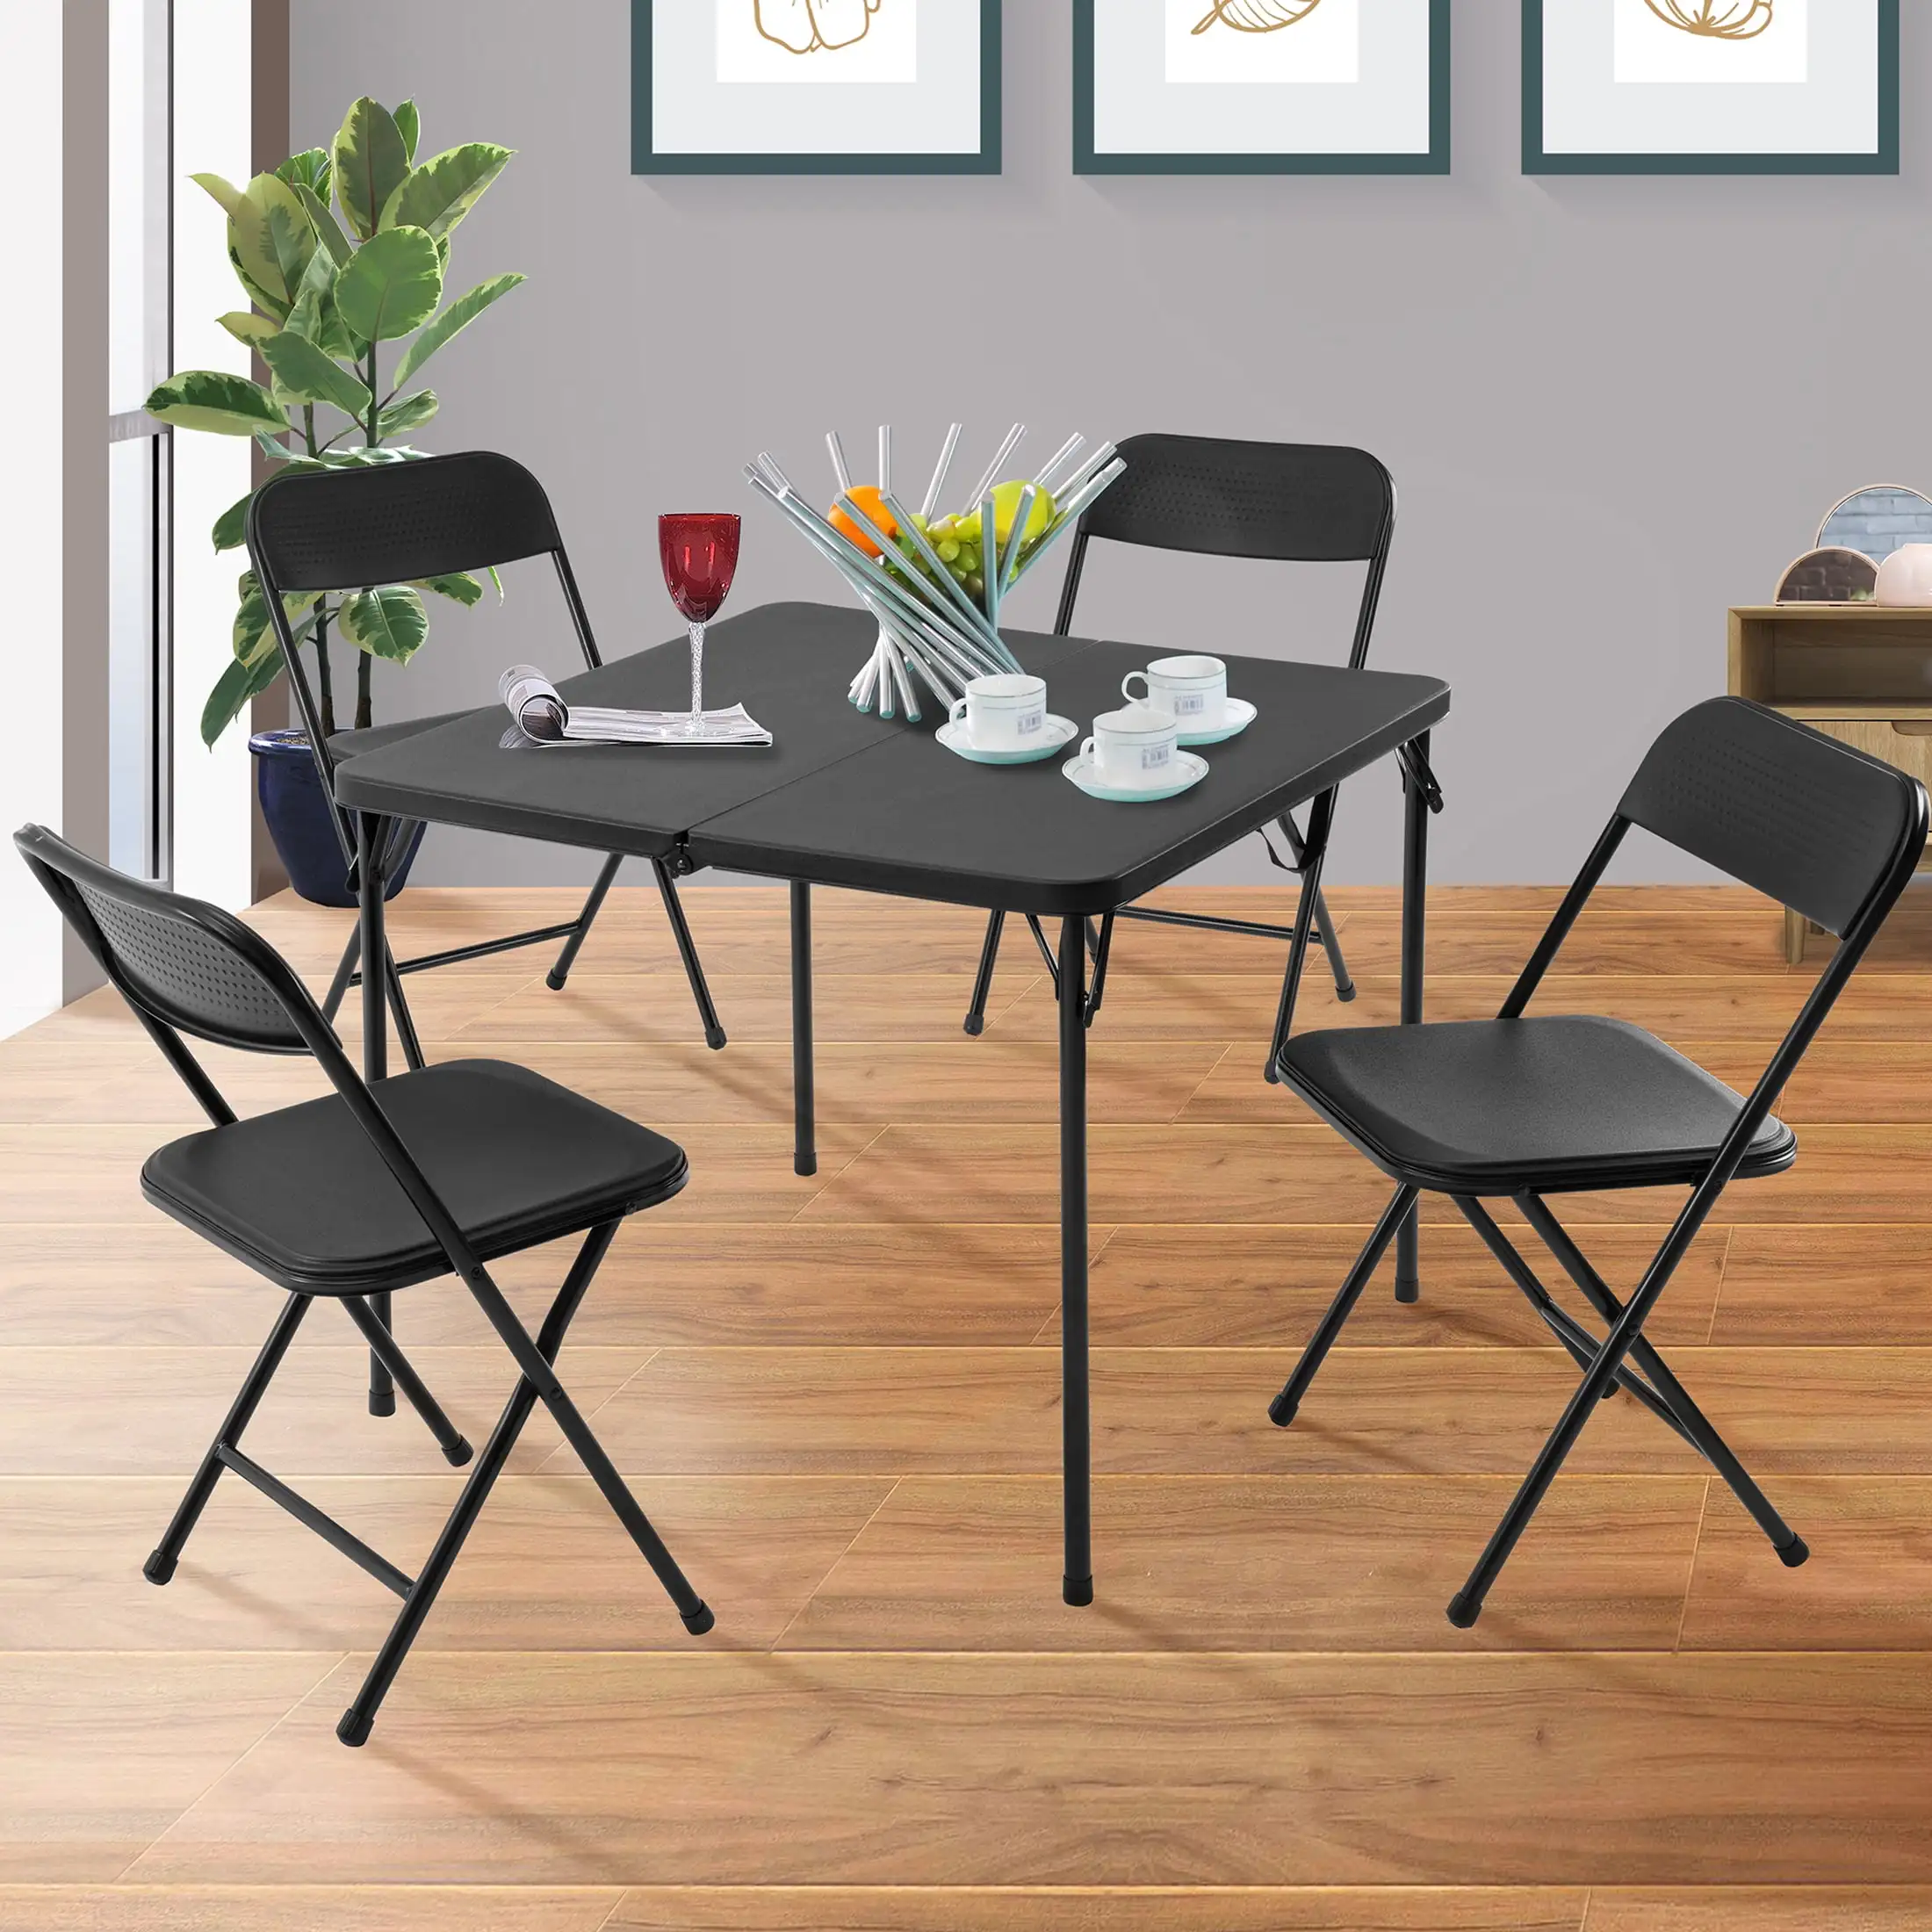 

Набор из 5-ти предметов из смолы для открыток и четырех стульев-черный, компактный обеденный и игровой набор